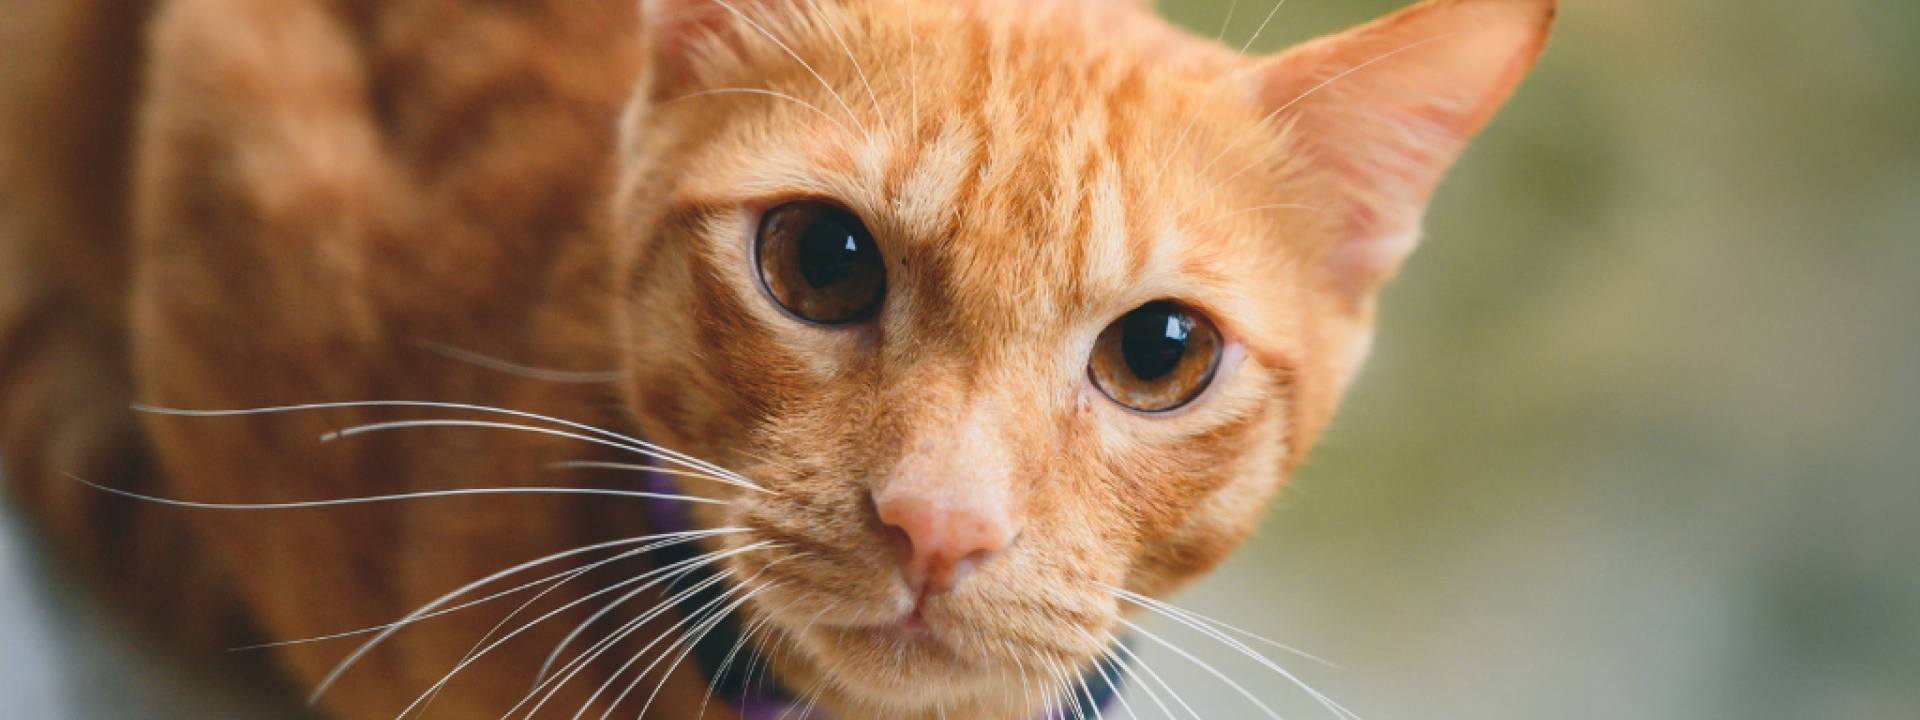 Orange cat close up